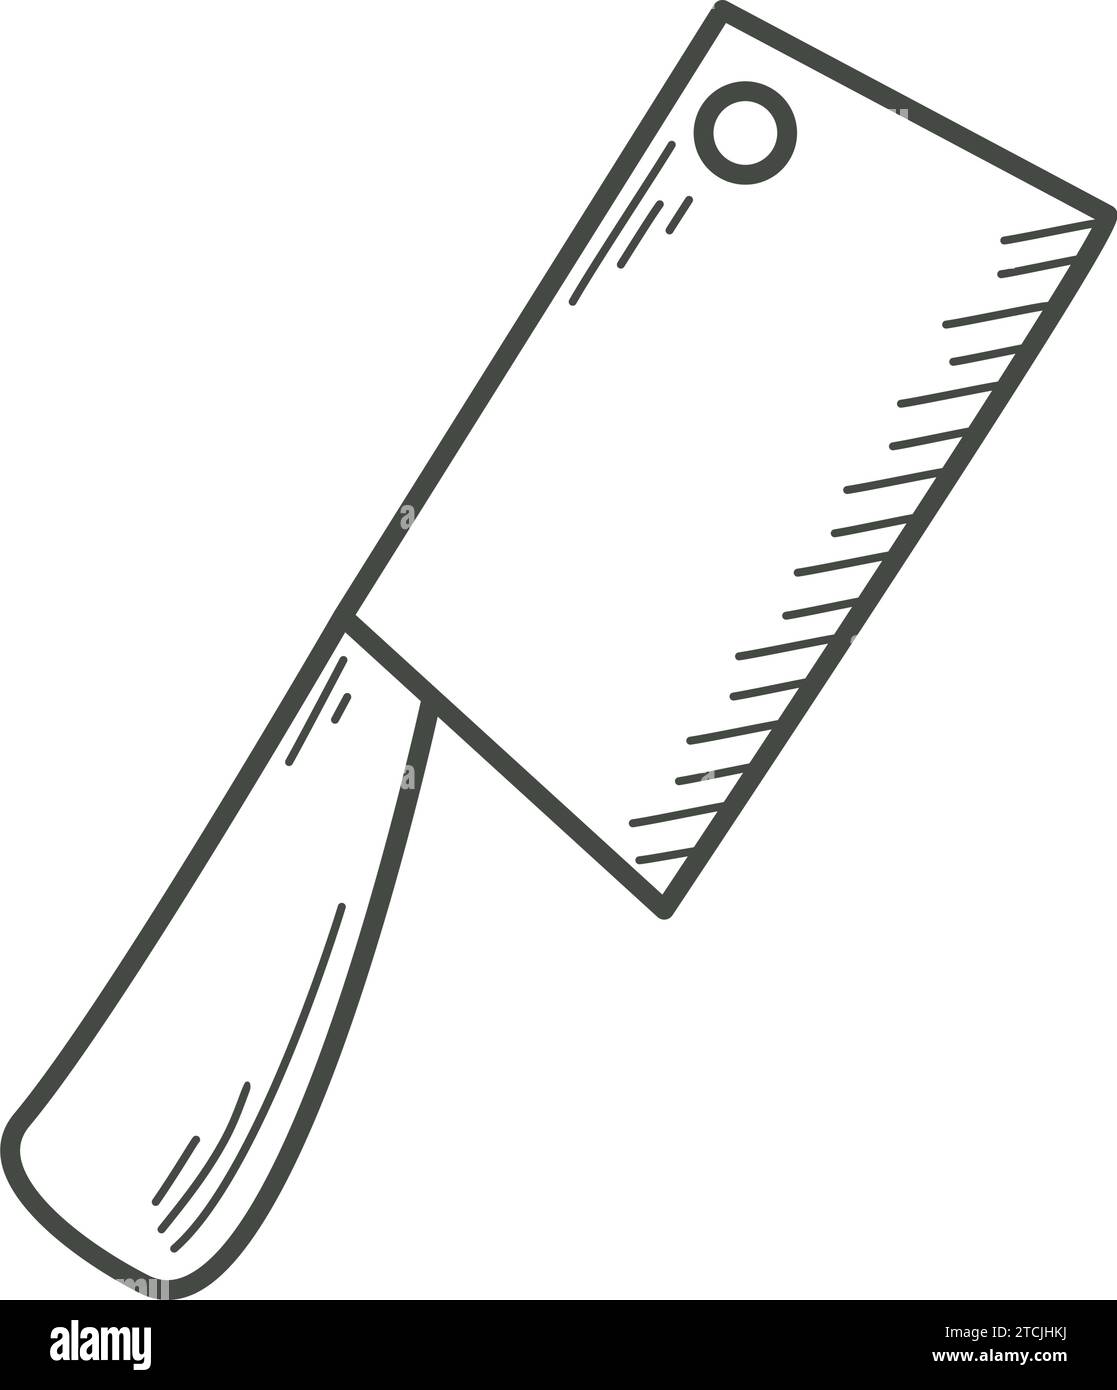 Grand couteau culinaire pour couper le style croquis de doodle de viande. Pince coupante culinaire du chef Couteau de cuisine à croquis à l'encre dessiné à la main, vecteur isolé Illustration de Vecteur